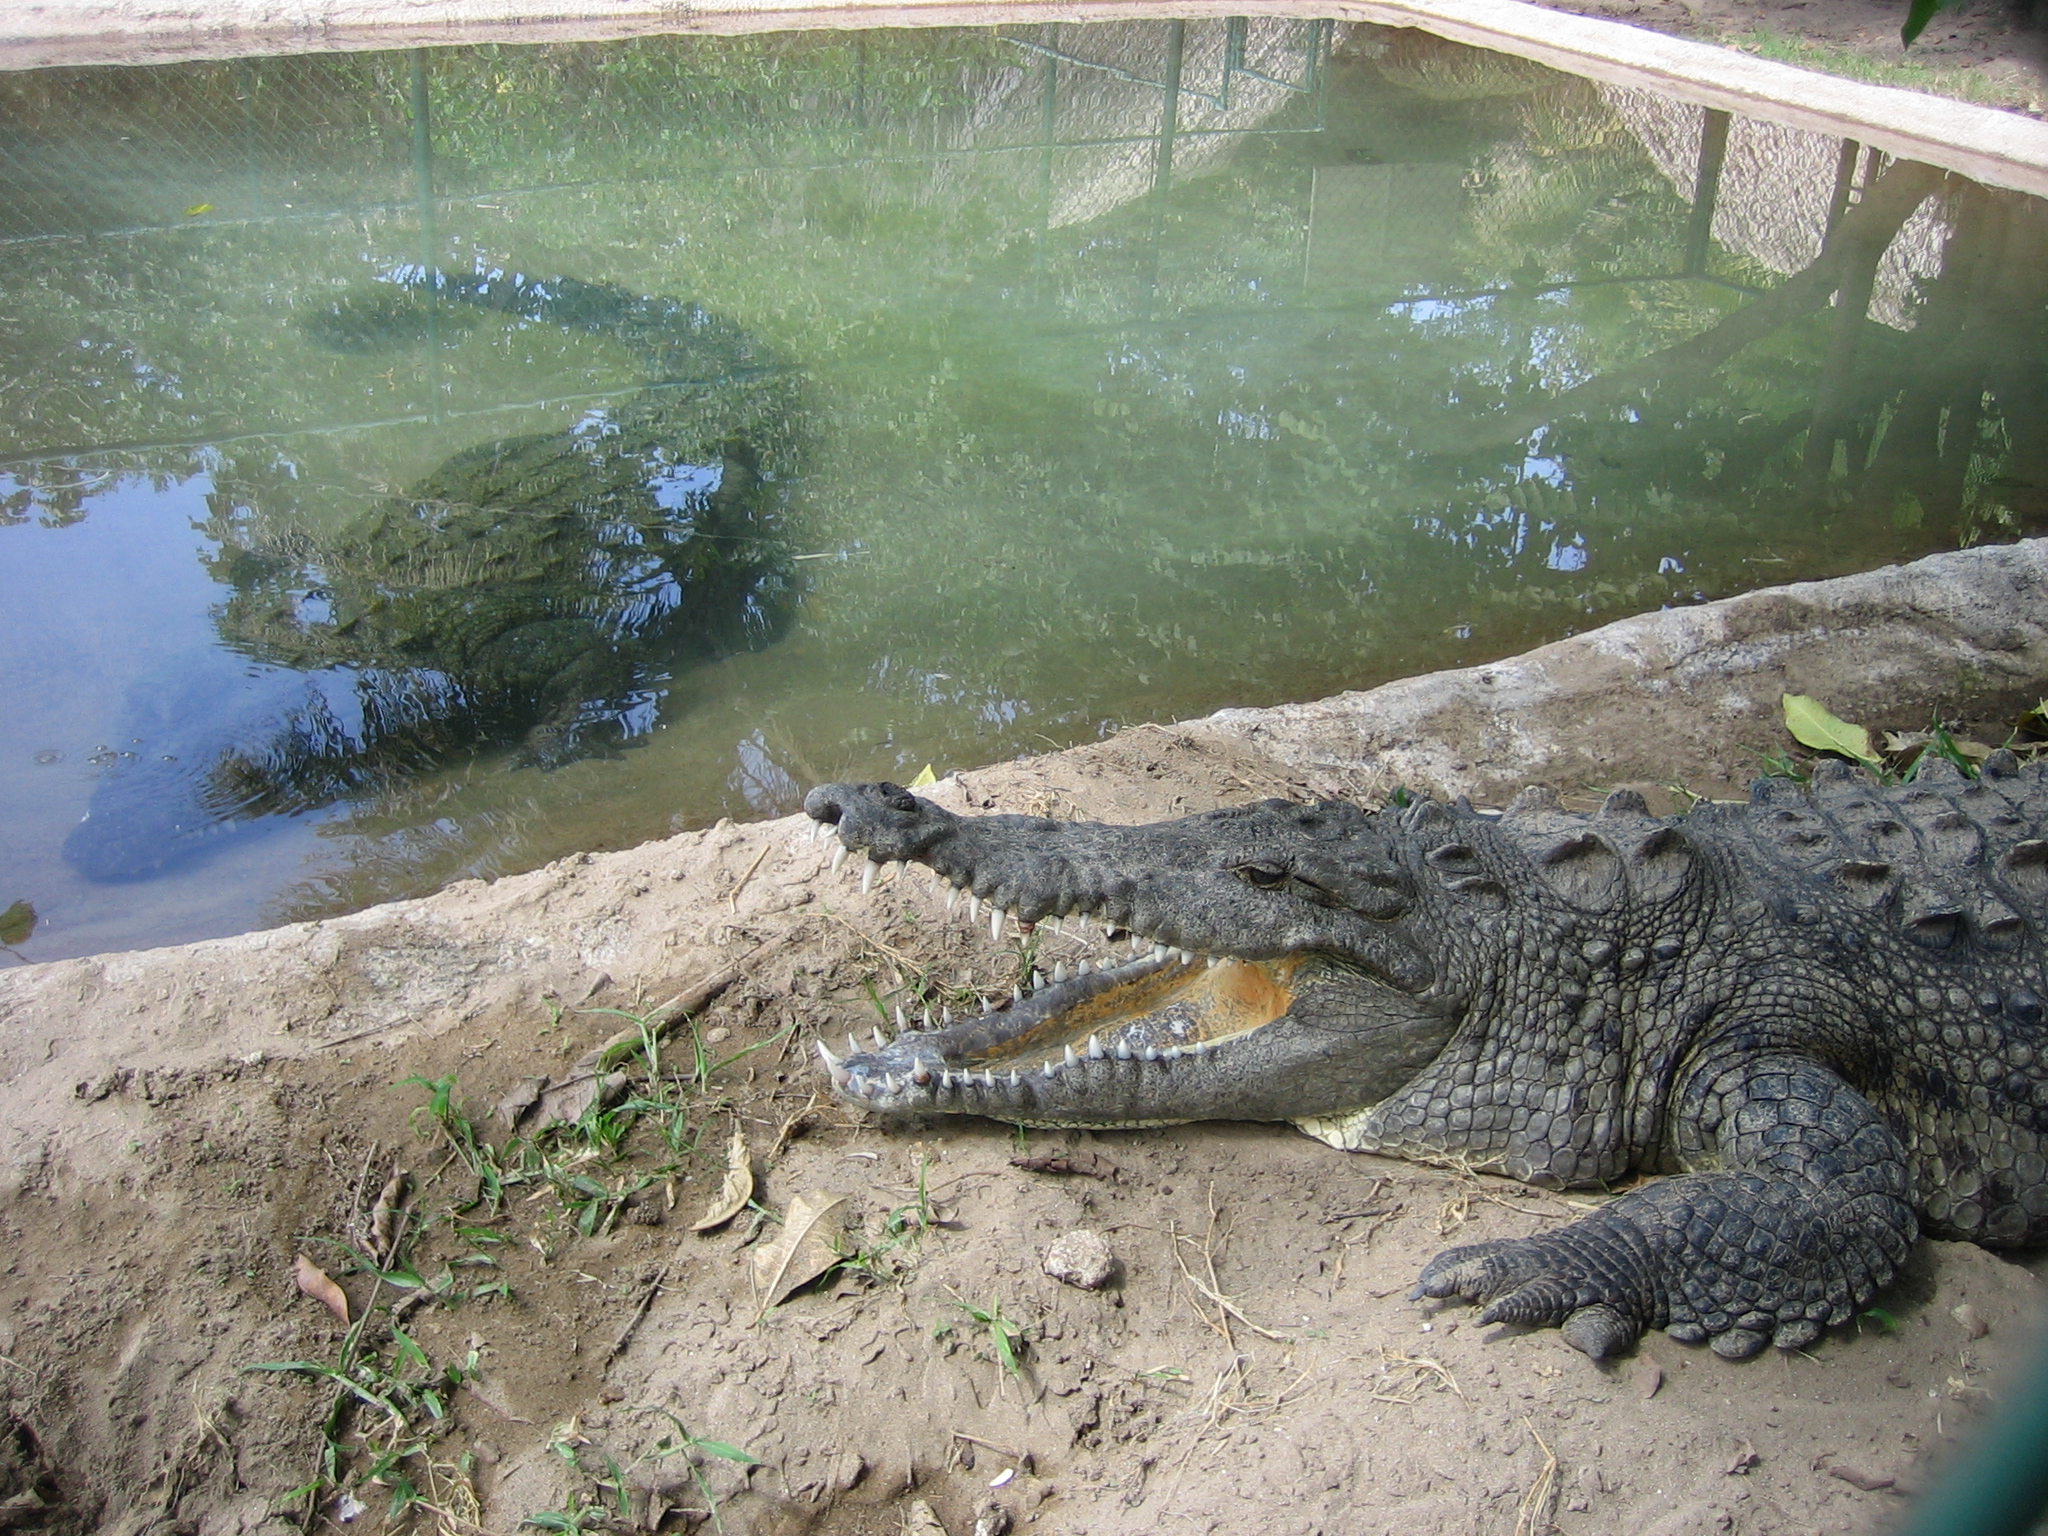 file-crocodile-farm-in-mexico-jpg-wikimedia-commons